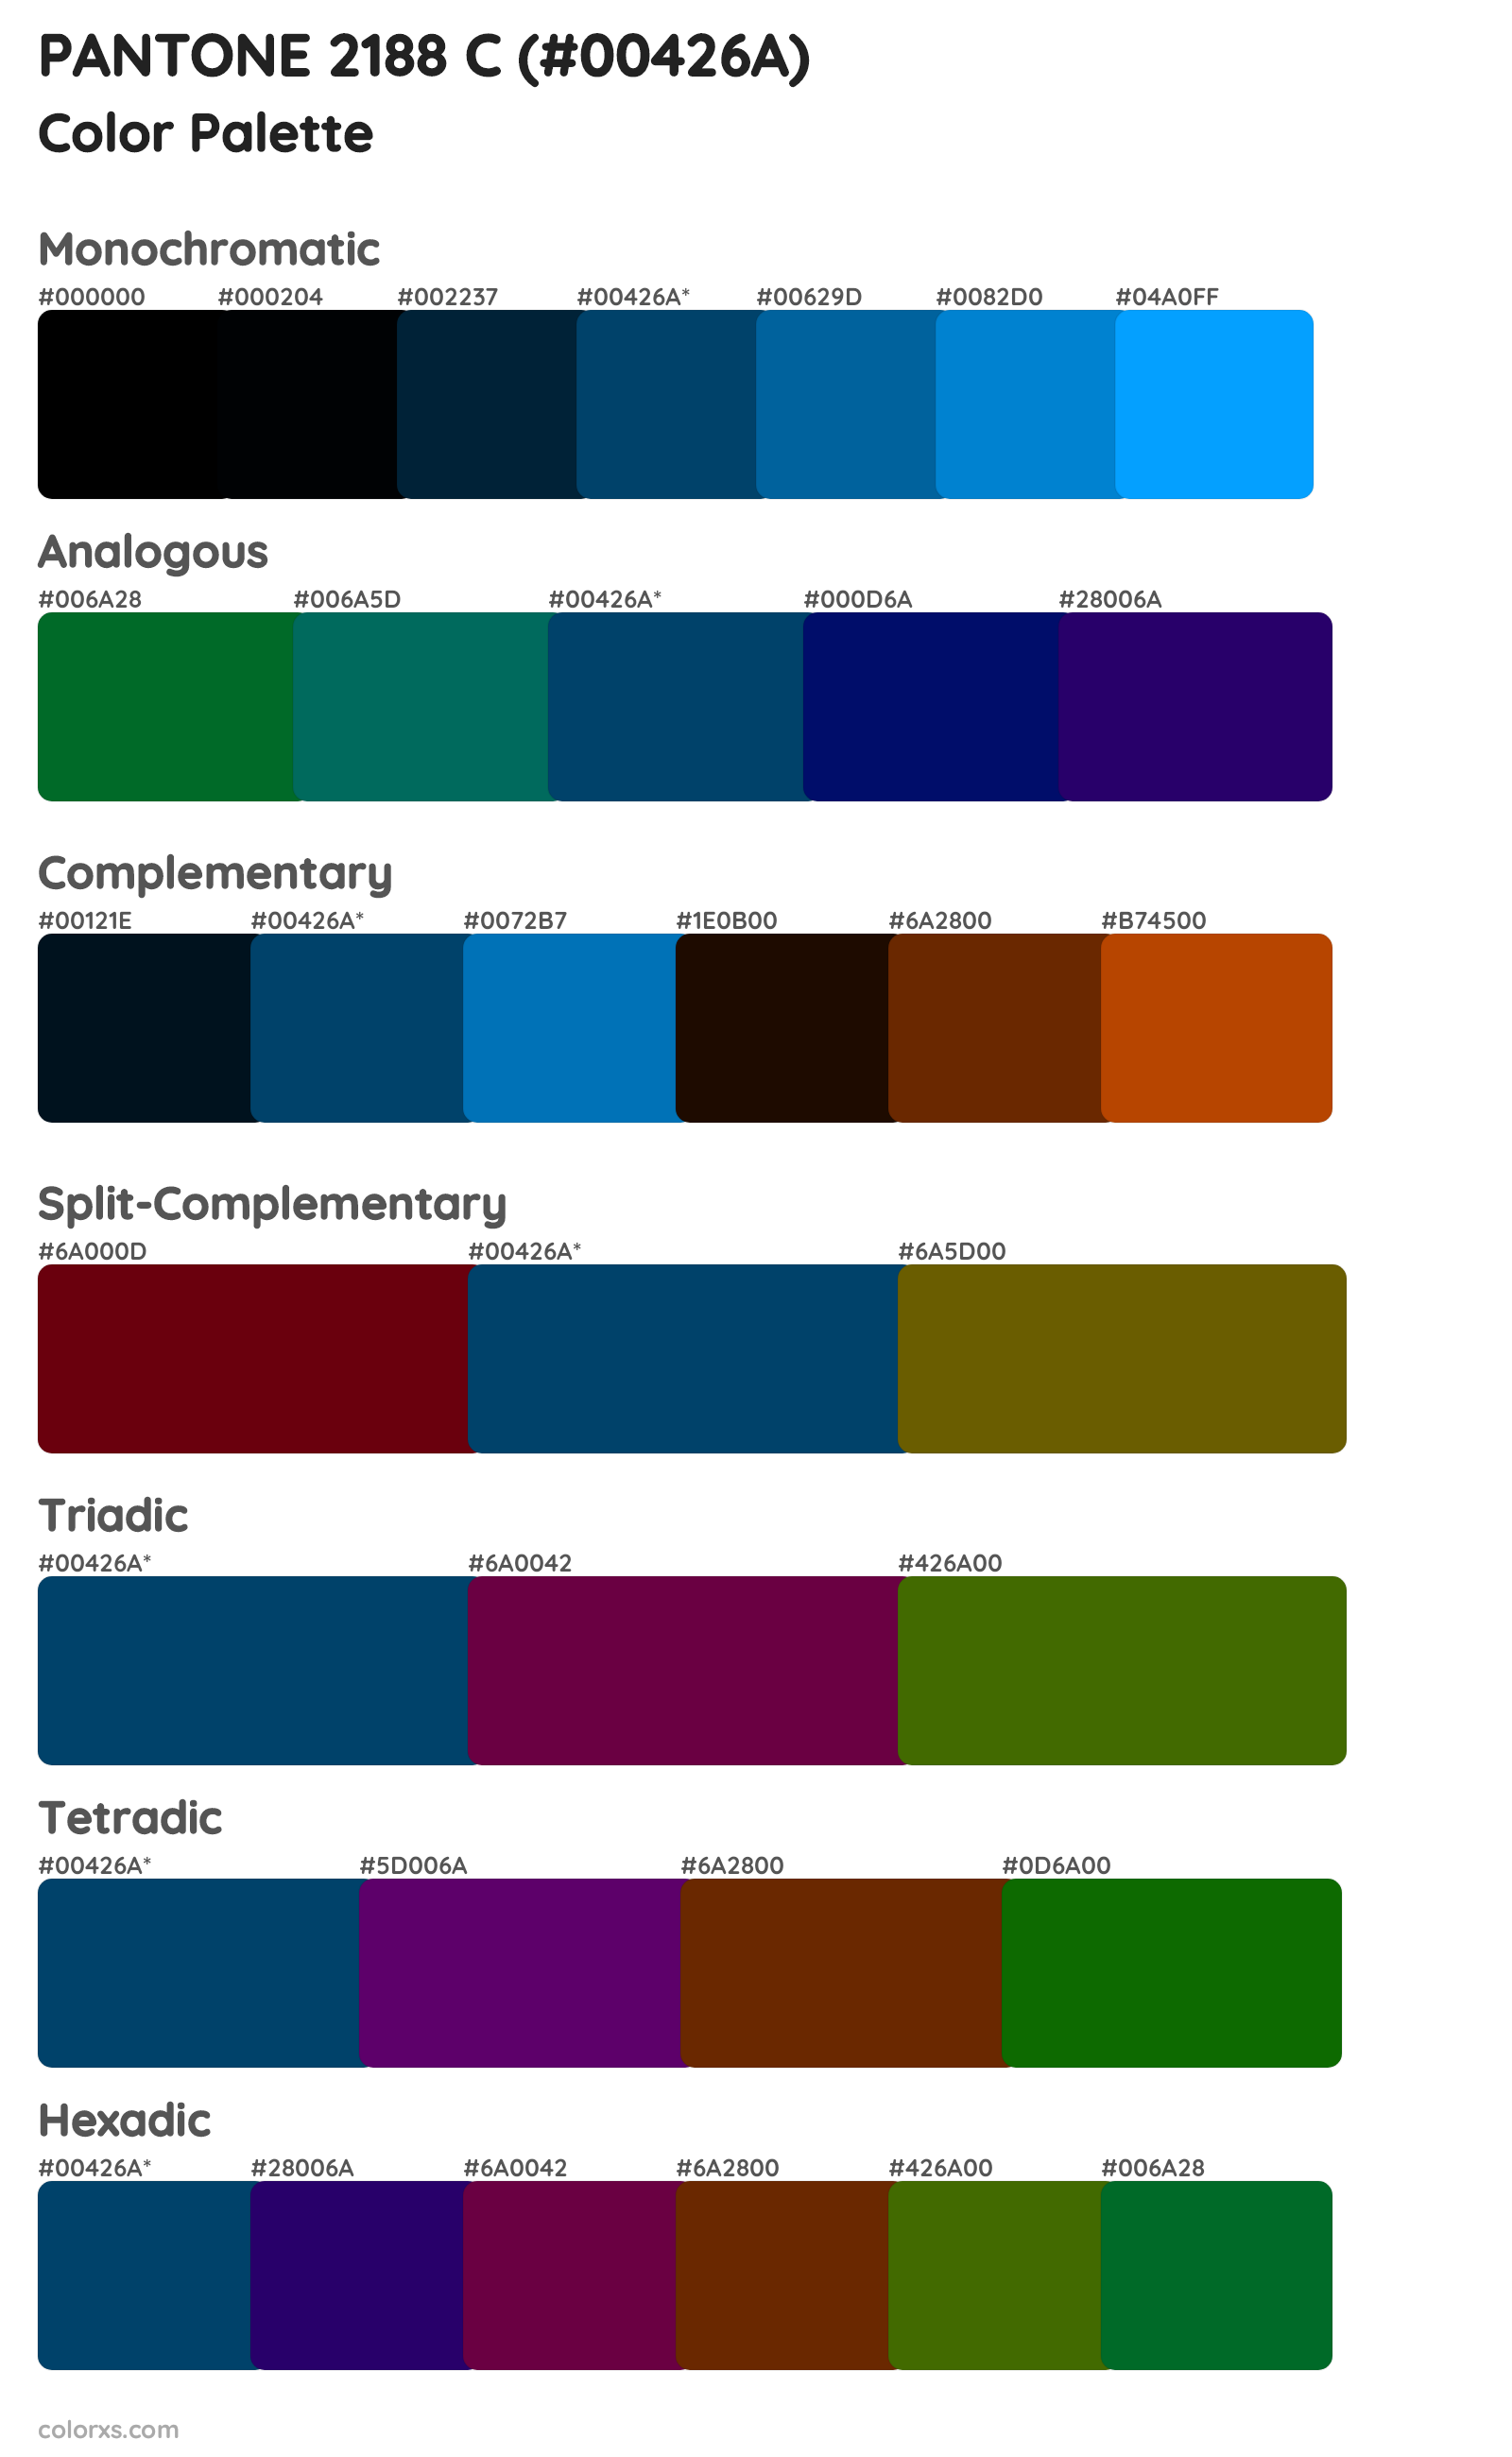 PANTONE 2188 C Color Scheme Palettes